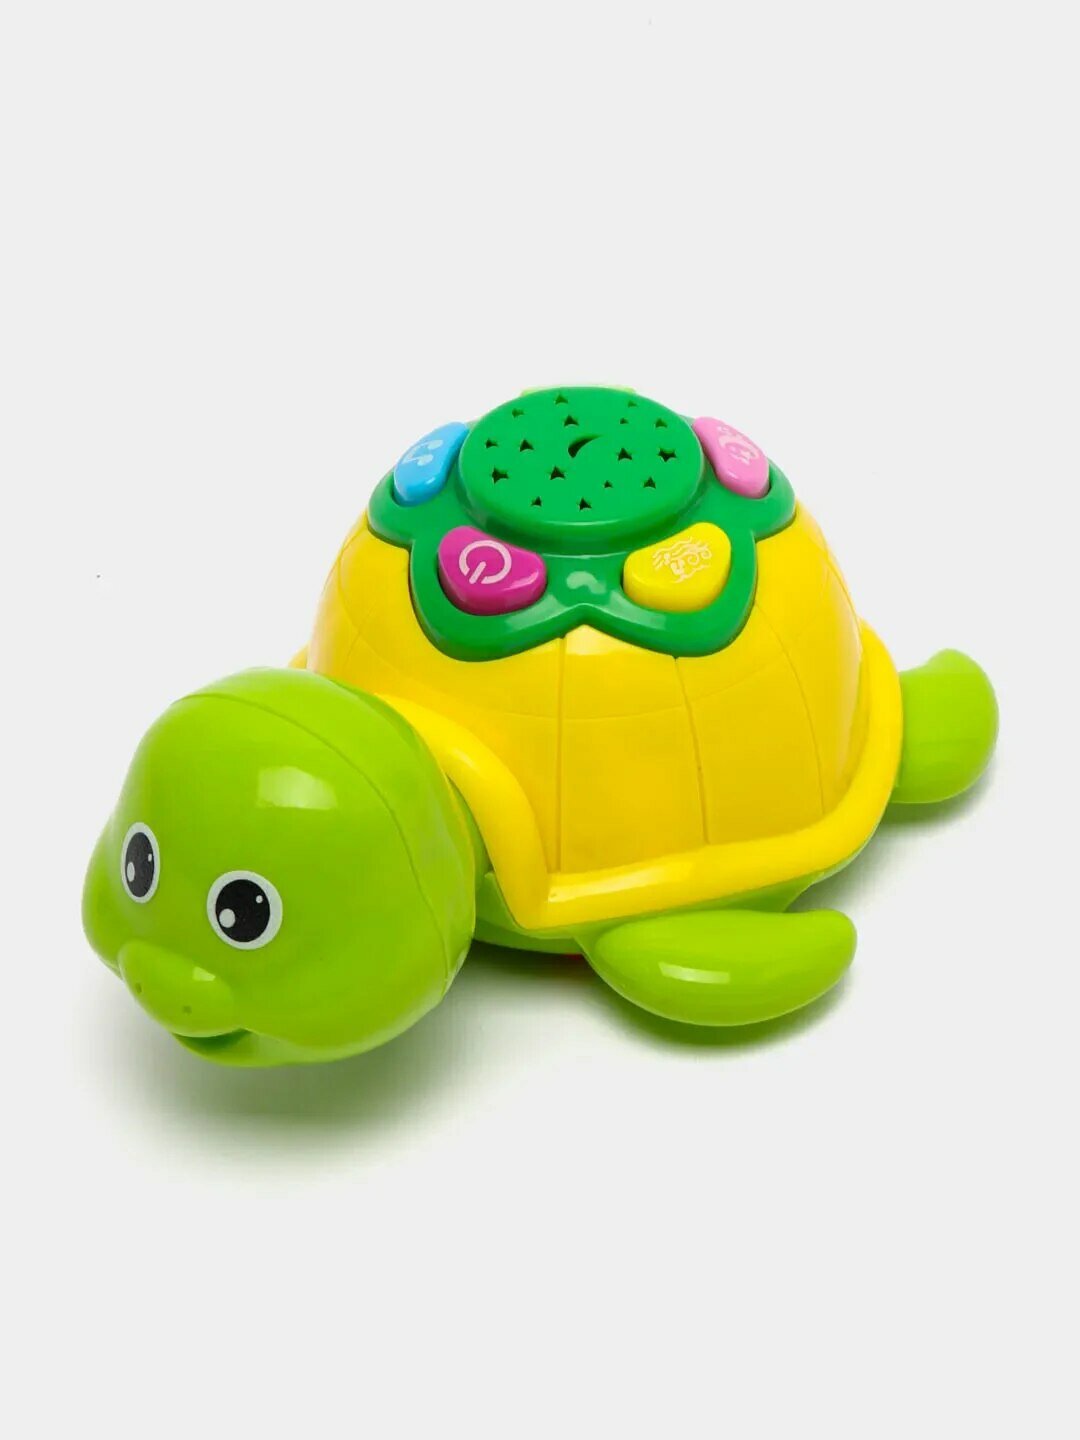 Детская развивающая игрушка "Озорная черепаха с проектором", (зеленая) под блистером, свет, звук, PLAY SMART 7692